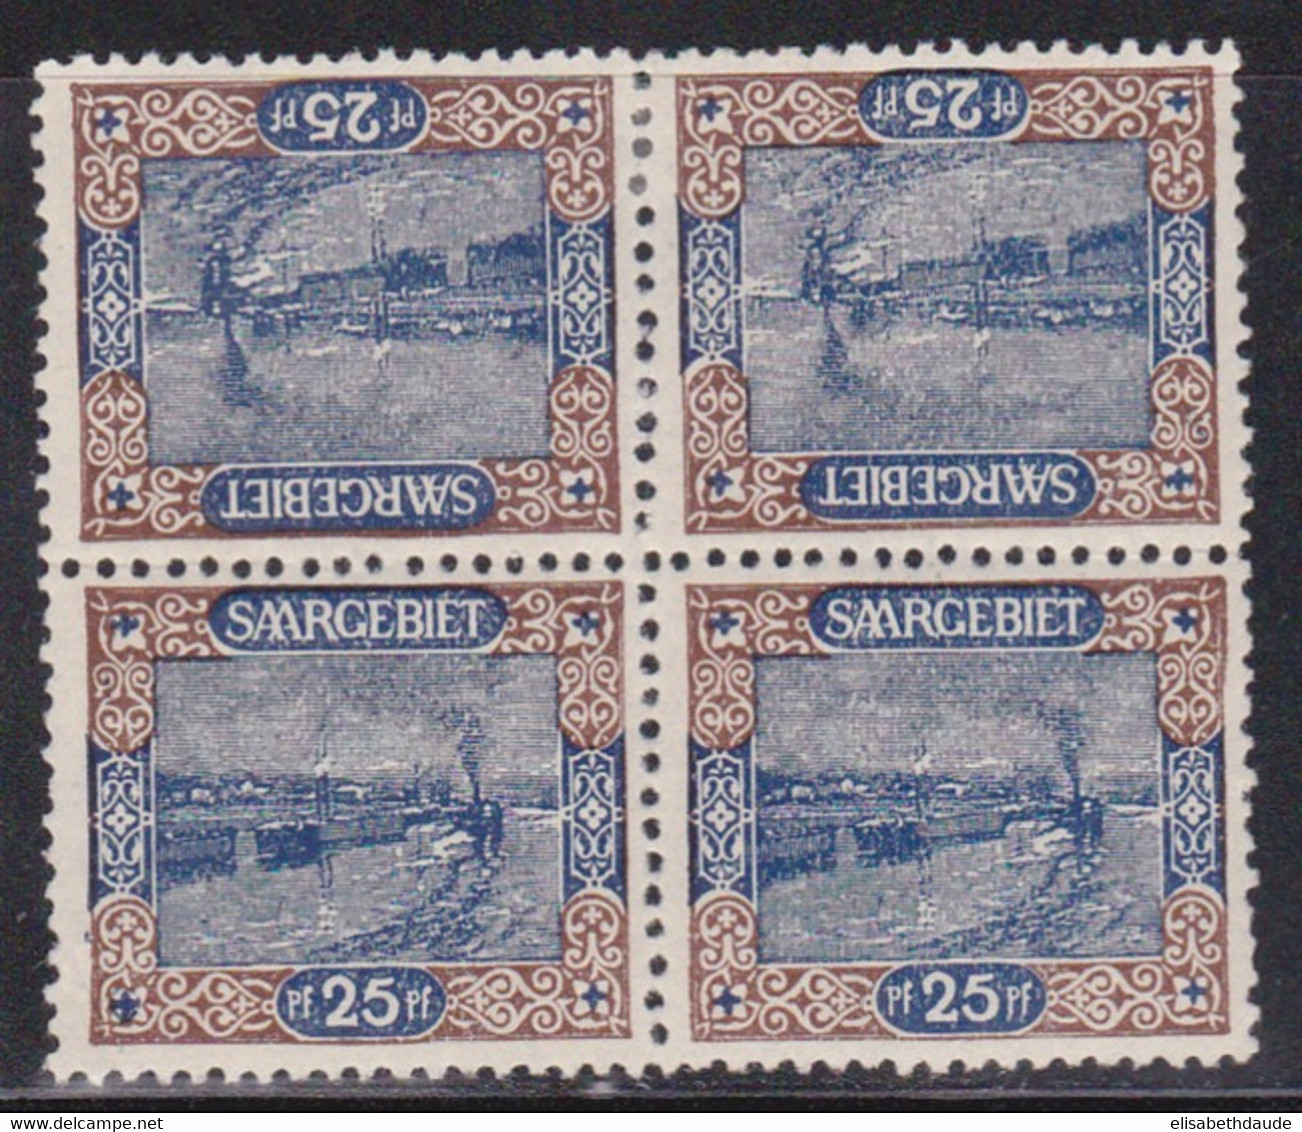 SAAR / SARRE - 1921 - YVERT N° 56c BLOC De 4 * Dont 2 TETE-BECHE - COTE = 80 + EUROS - Nuovi